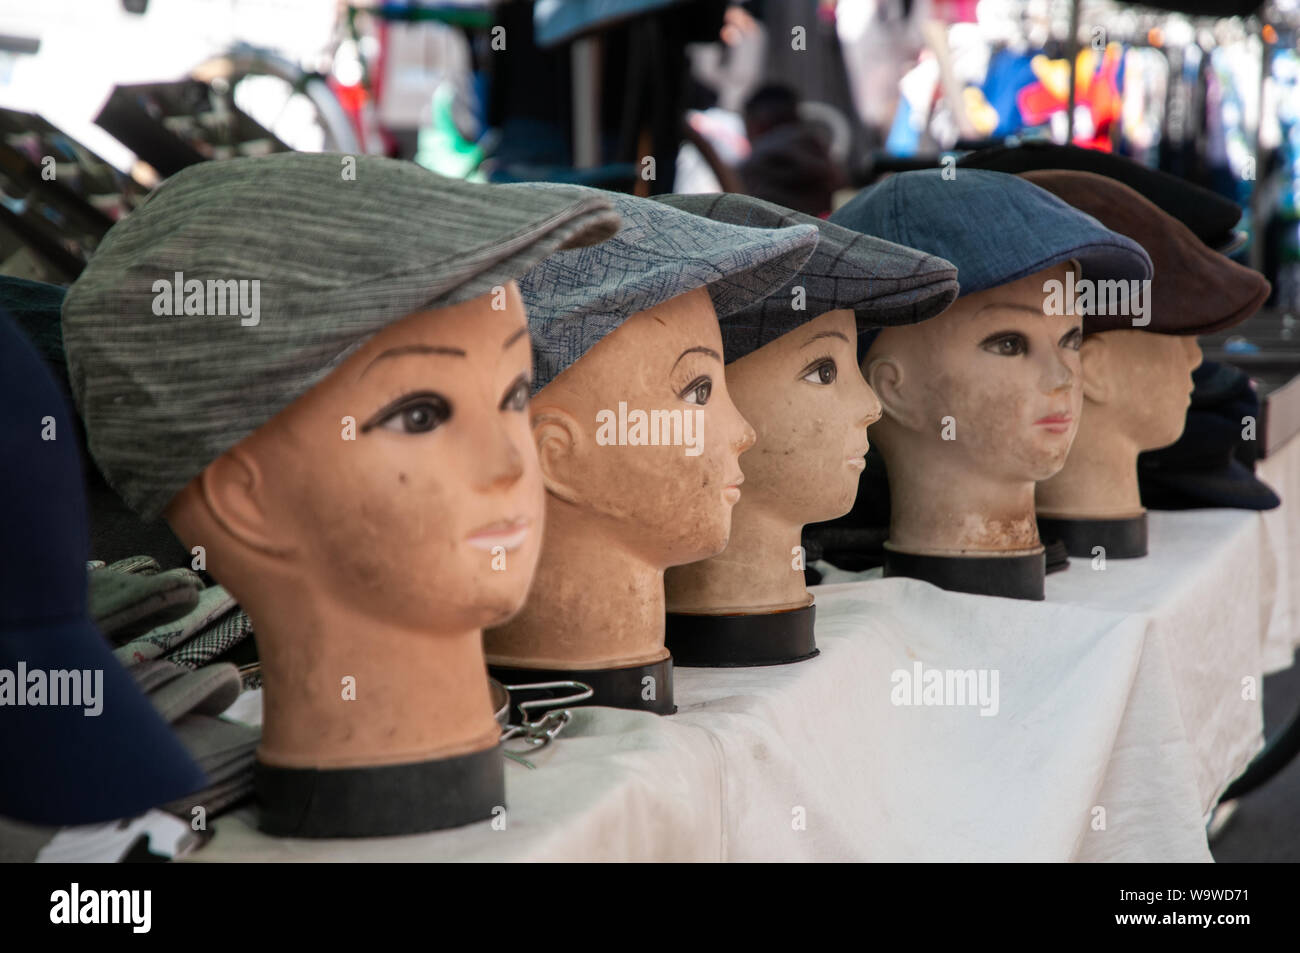 Un display di tappo piatto cappelli sul manichino capi in una fase di stallo nel mercato all'aperto di Dieppe, Francia. Foto Stock